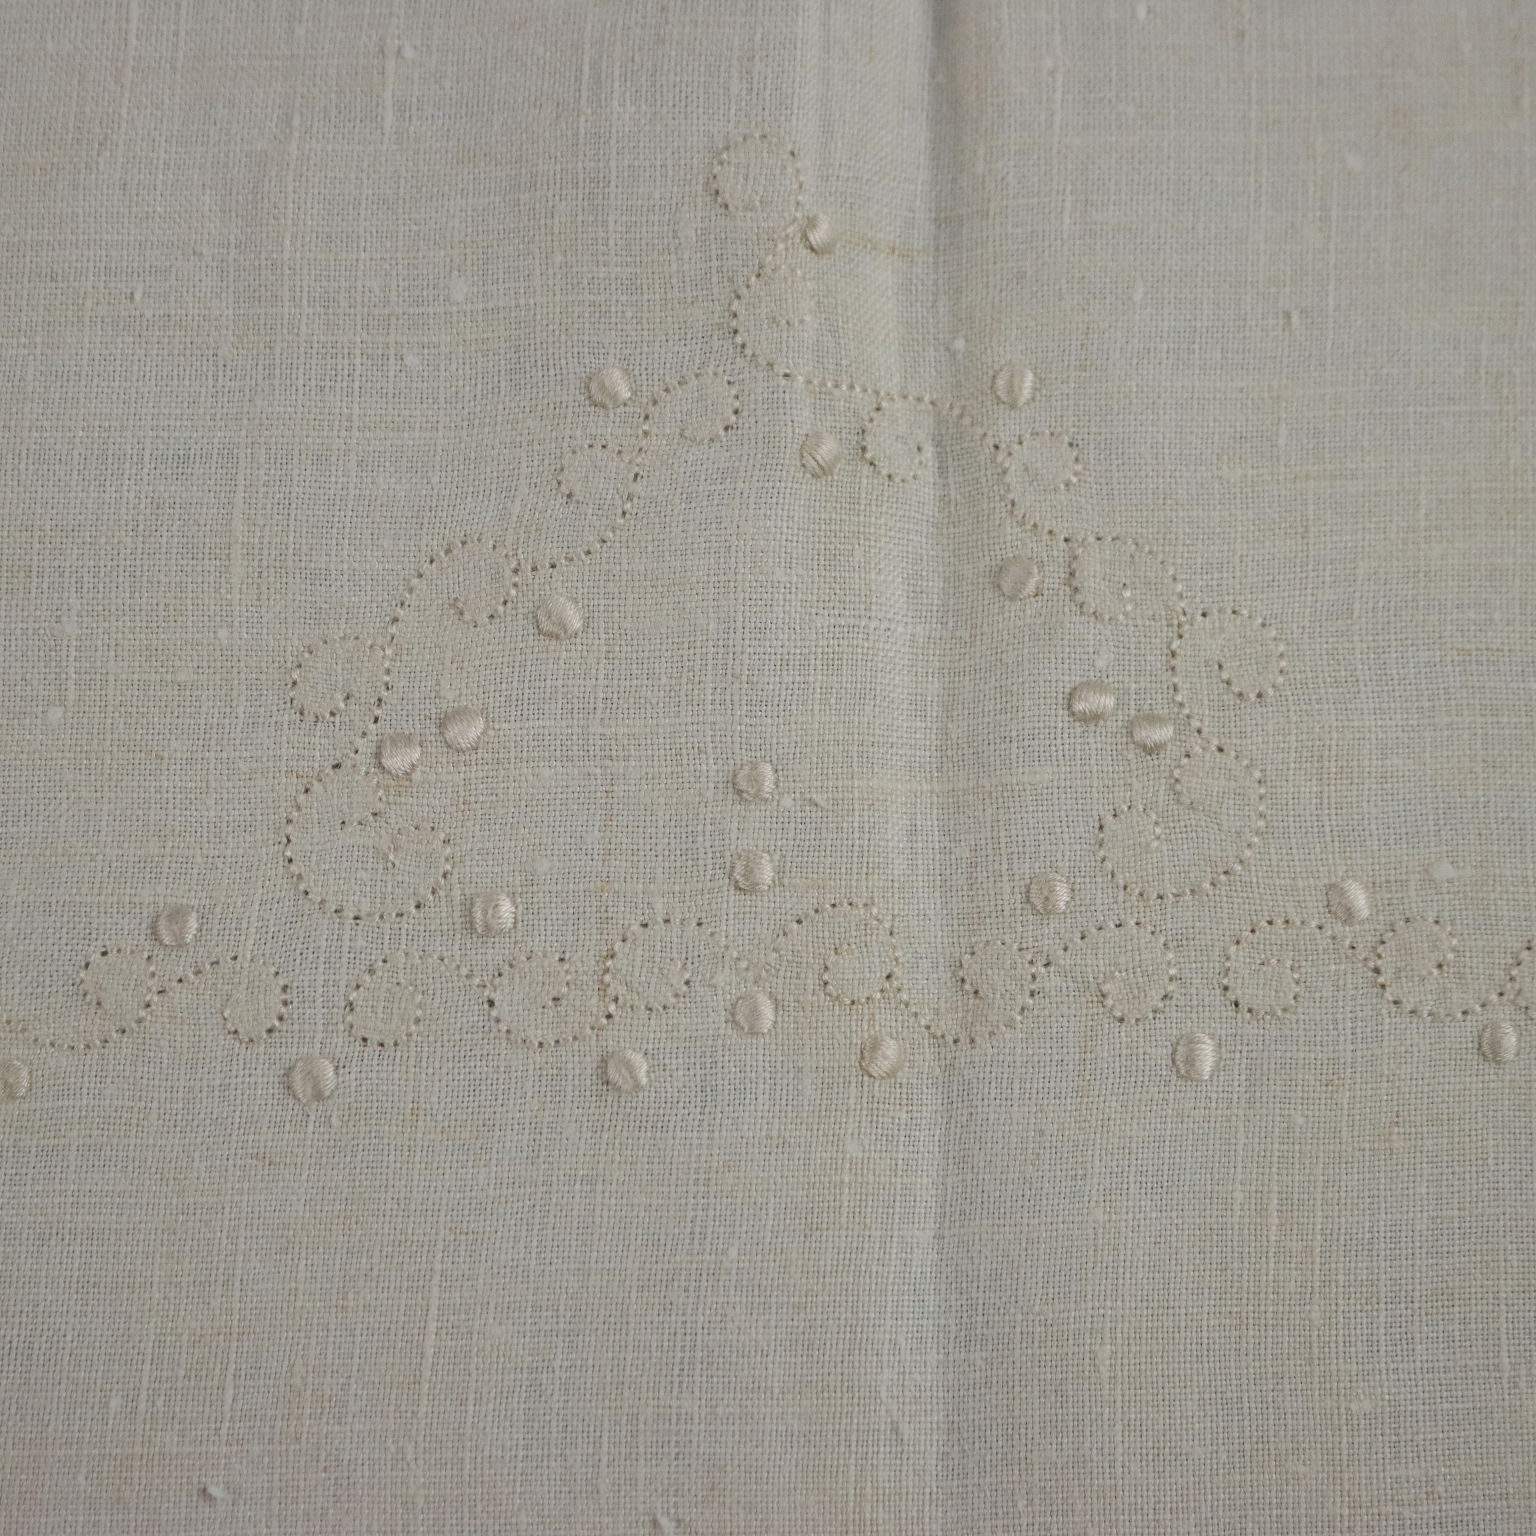 Tovaglia antica in cotone bianca, con intarsi ad uncinetto.